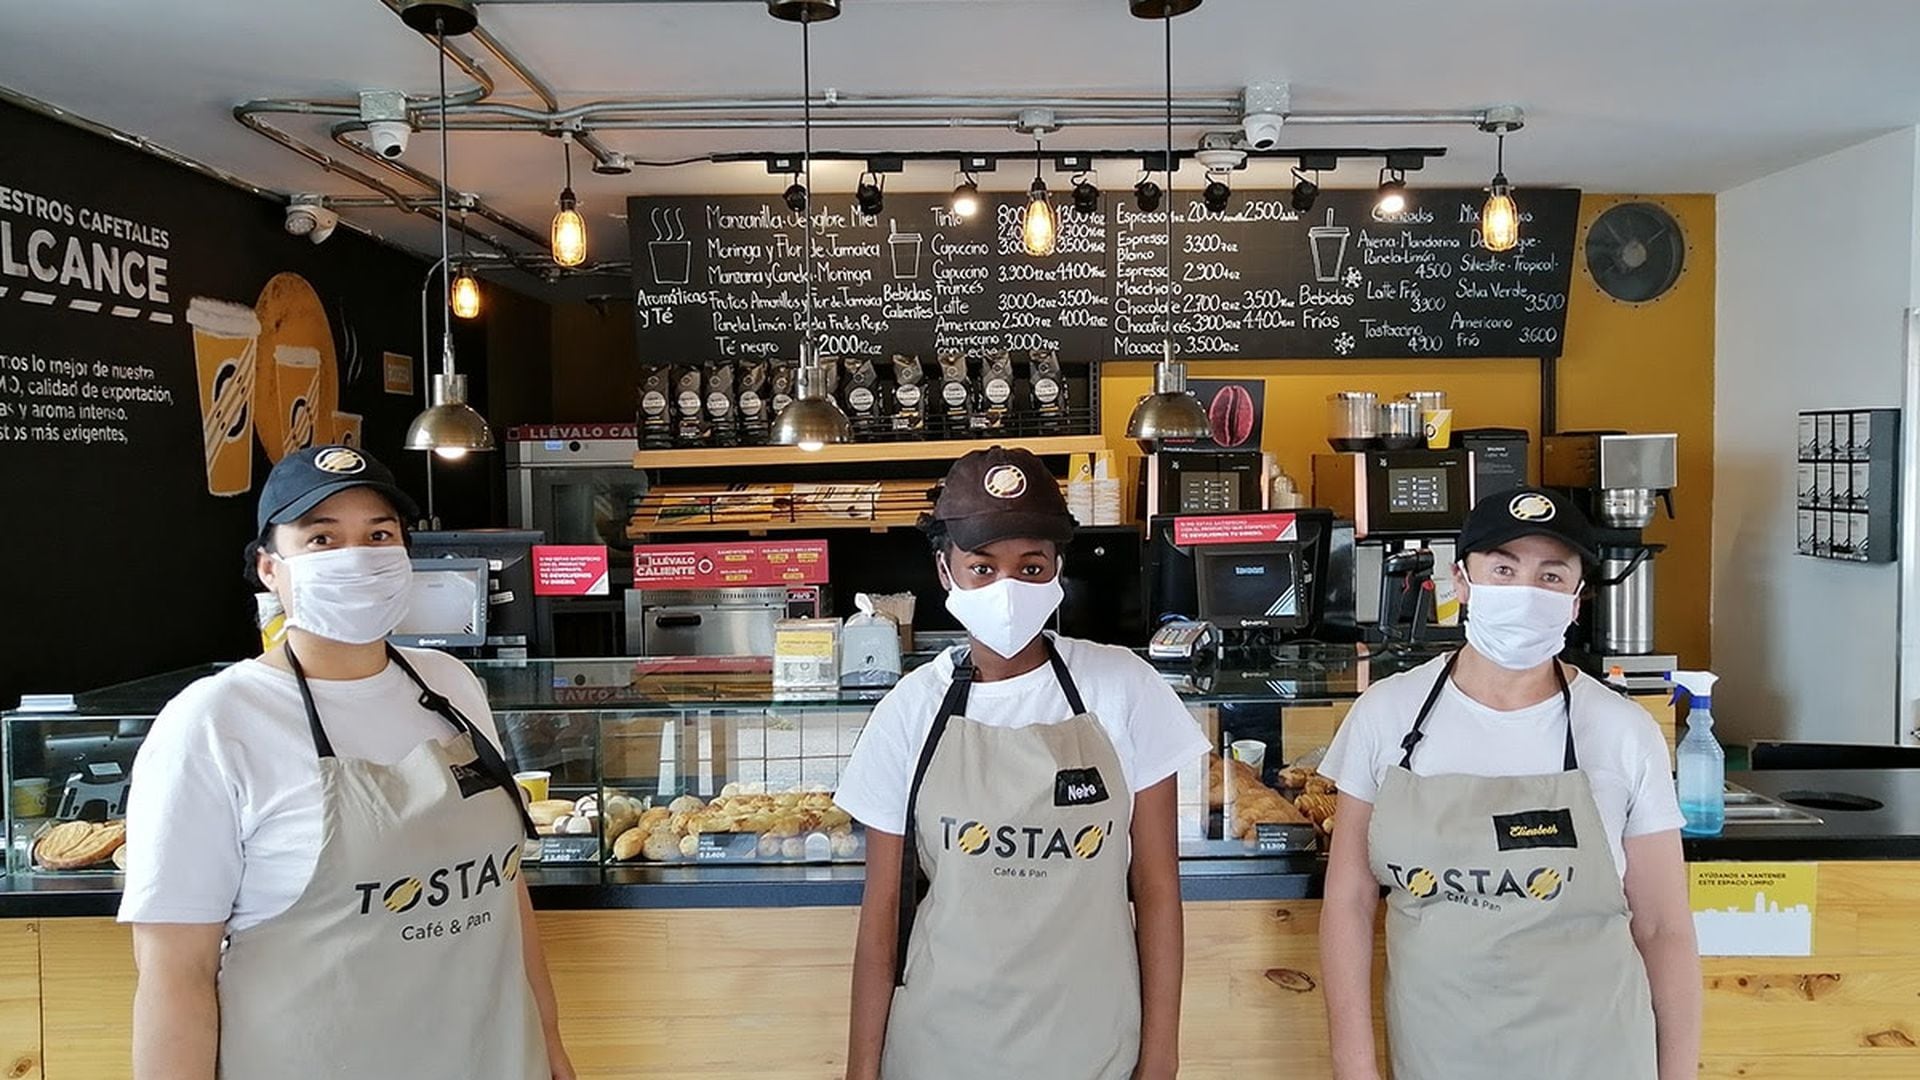 Tostao' Café & Pan lanza vacantes para jóvenes que buscan trabajo en  temporada navideña